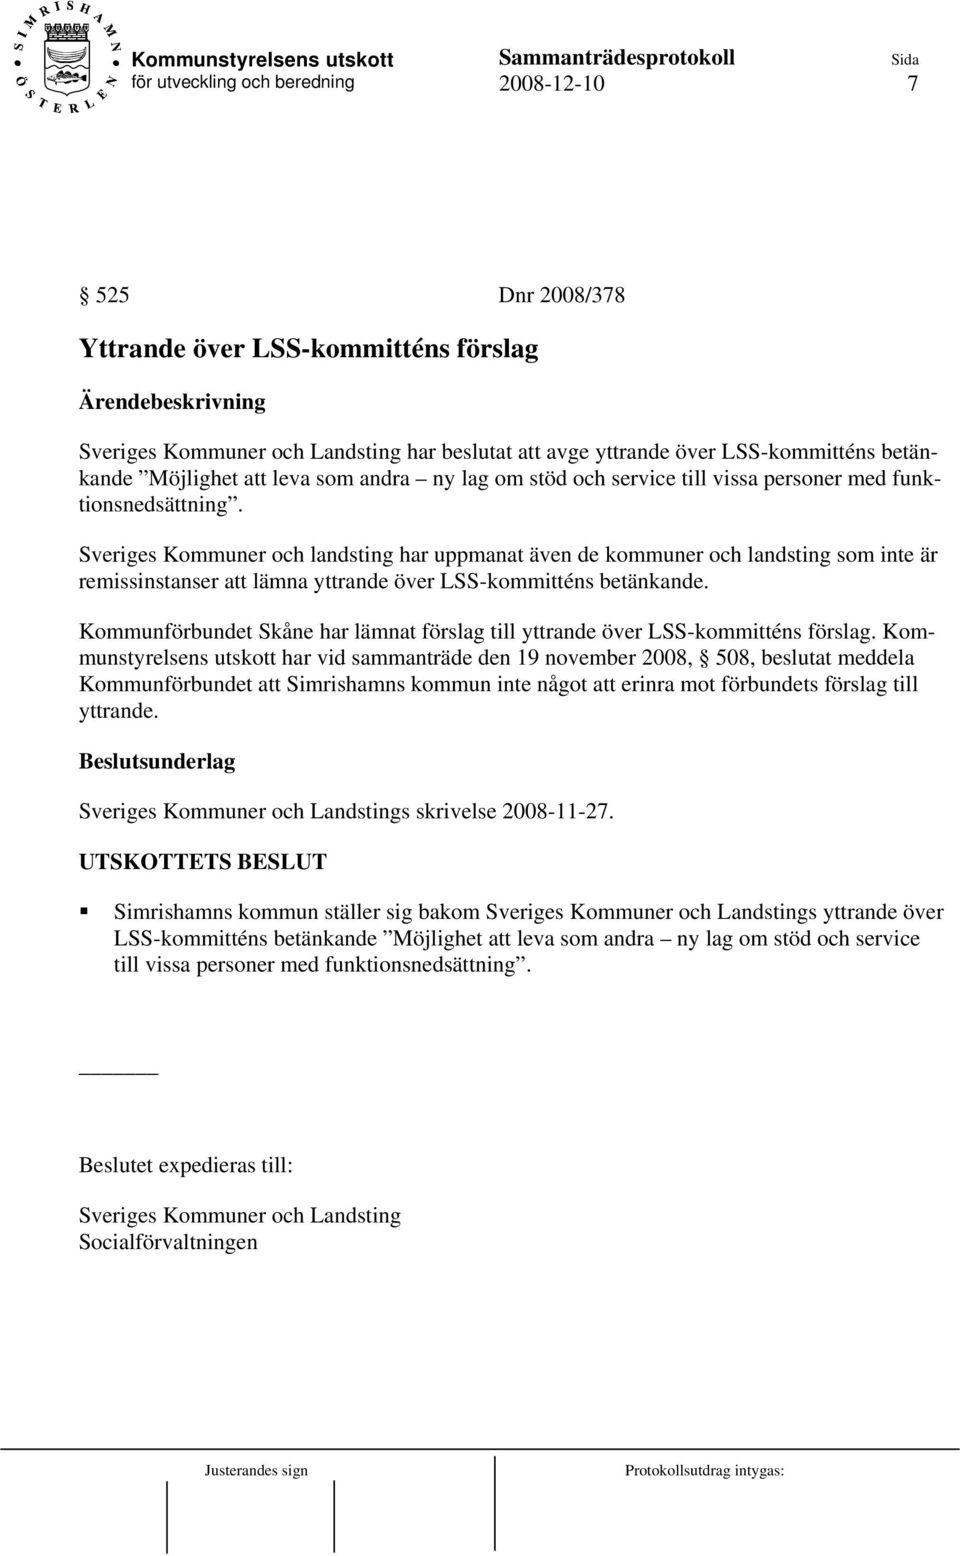 Sveriges Kommuner och landsting har uppmanat även de kommuner och landsting som inte är remissinstanser att lämna yttrande över LSS-kommitténs betänkande.